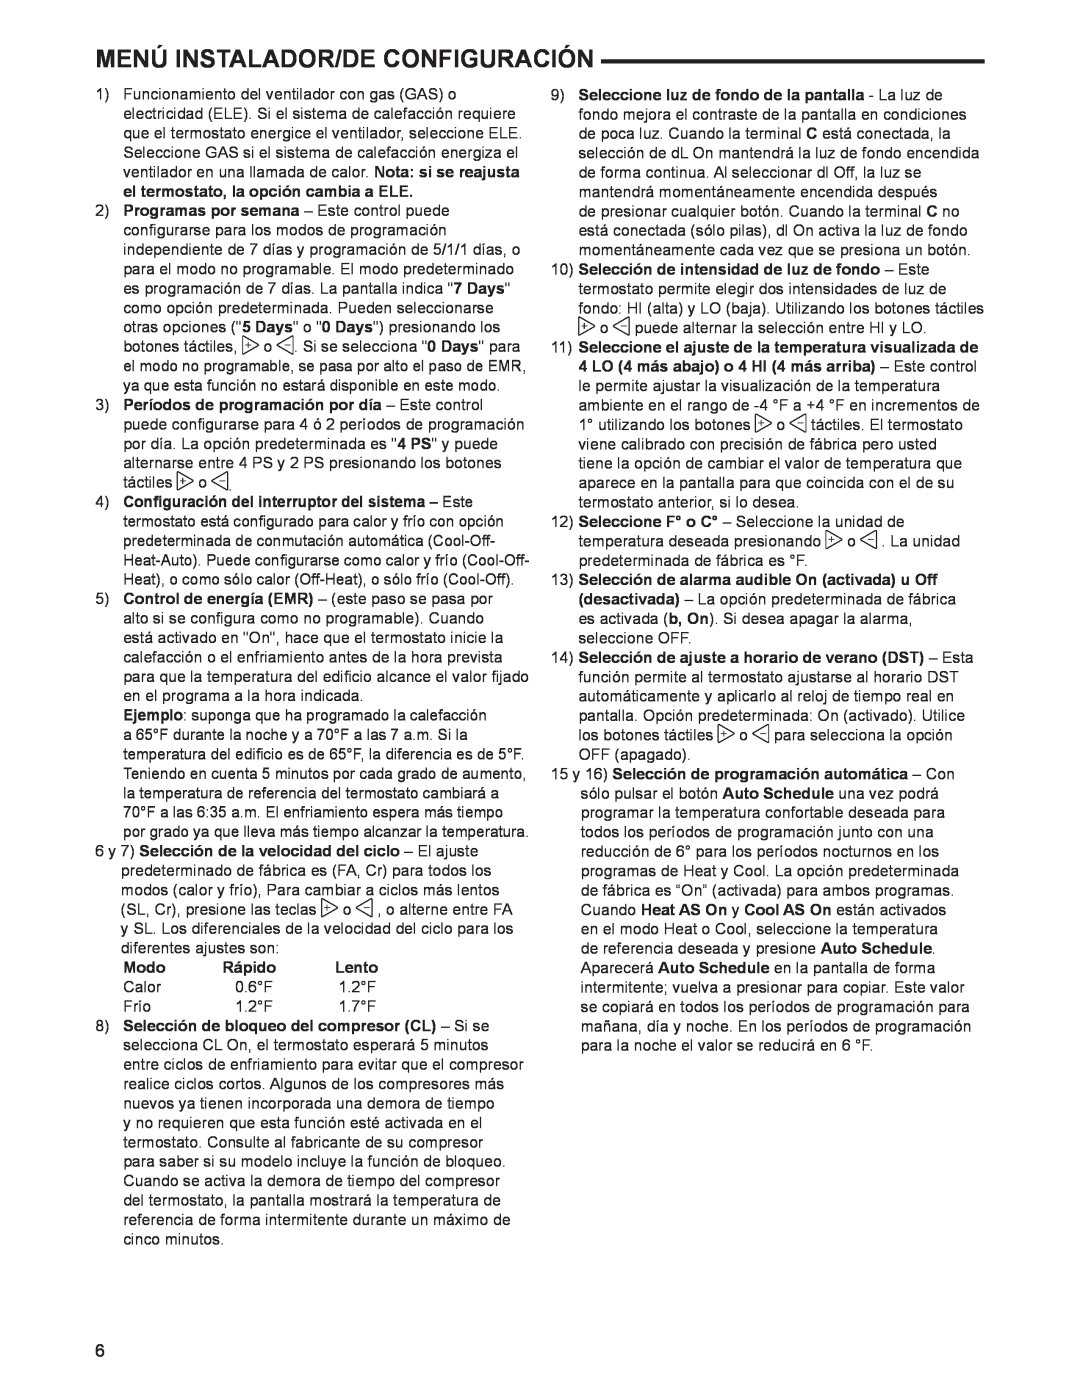 White Rodgers 1F97-1277 manual Modo, Rápido, Lento, Menú Instalador/De Configuración 